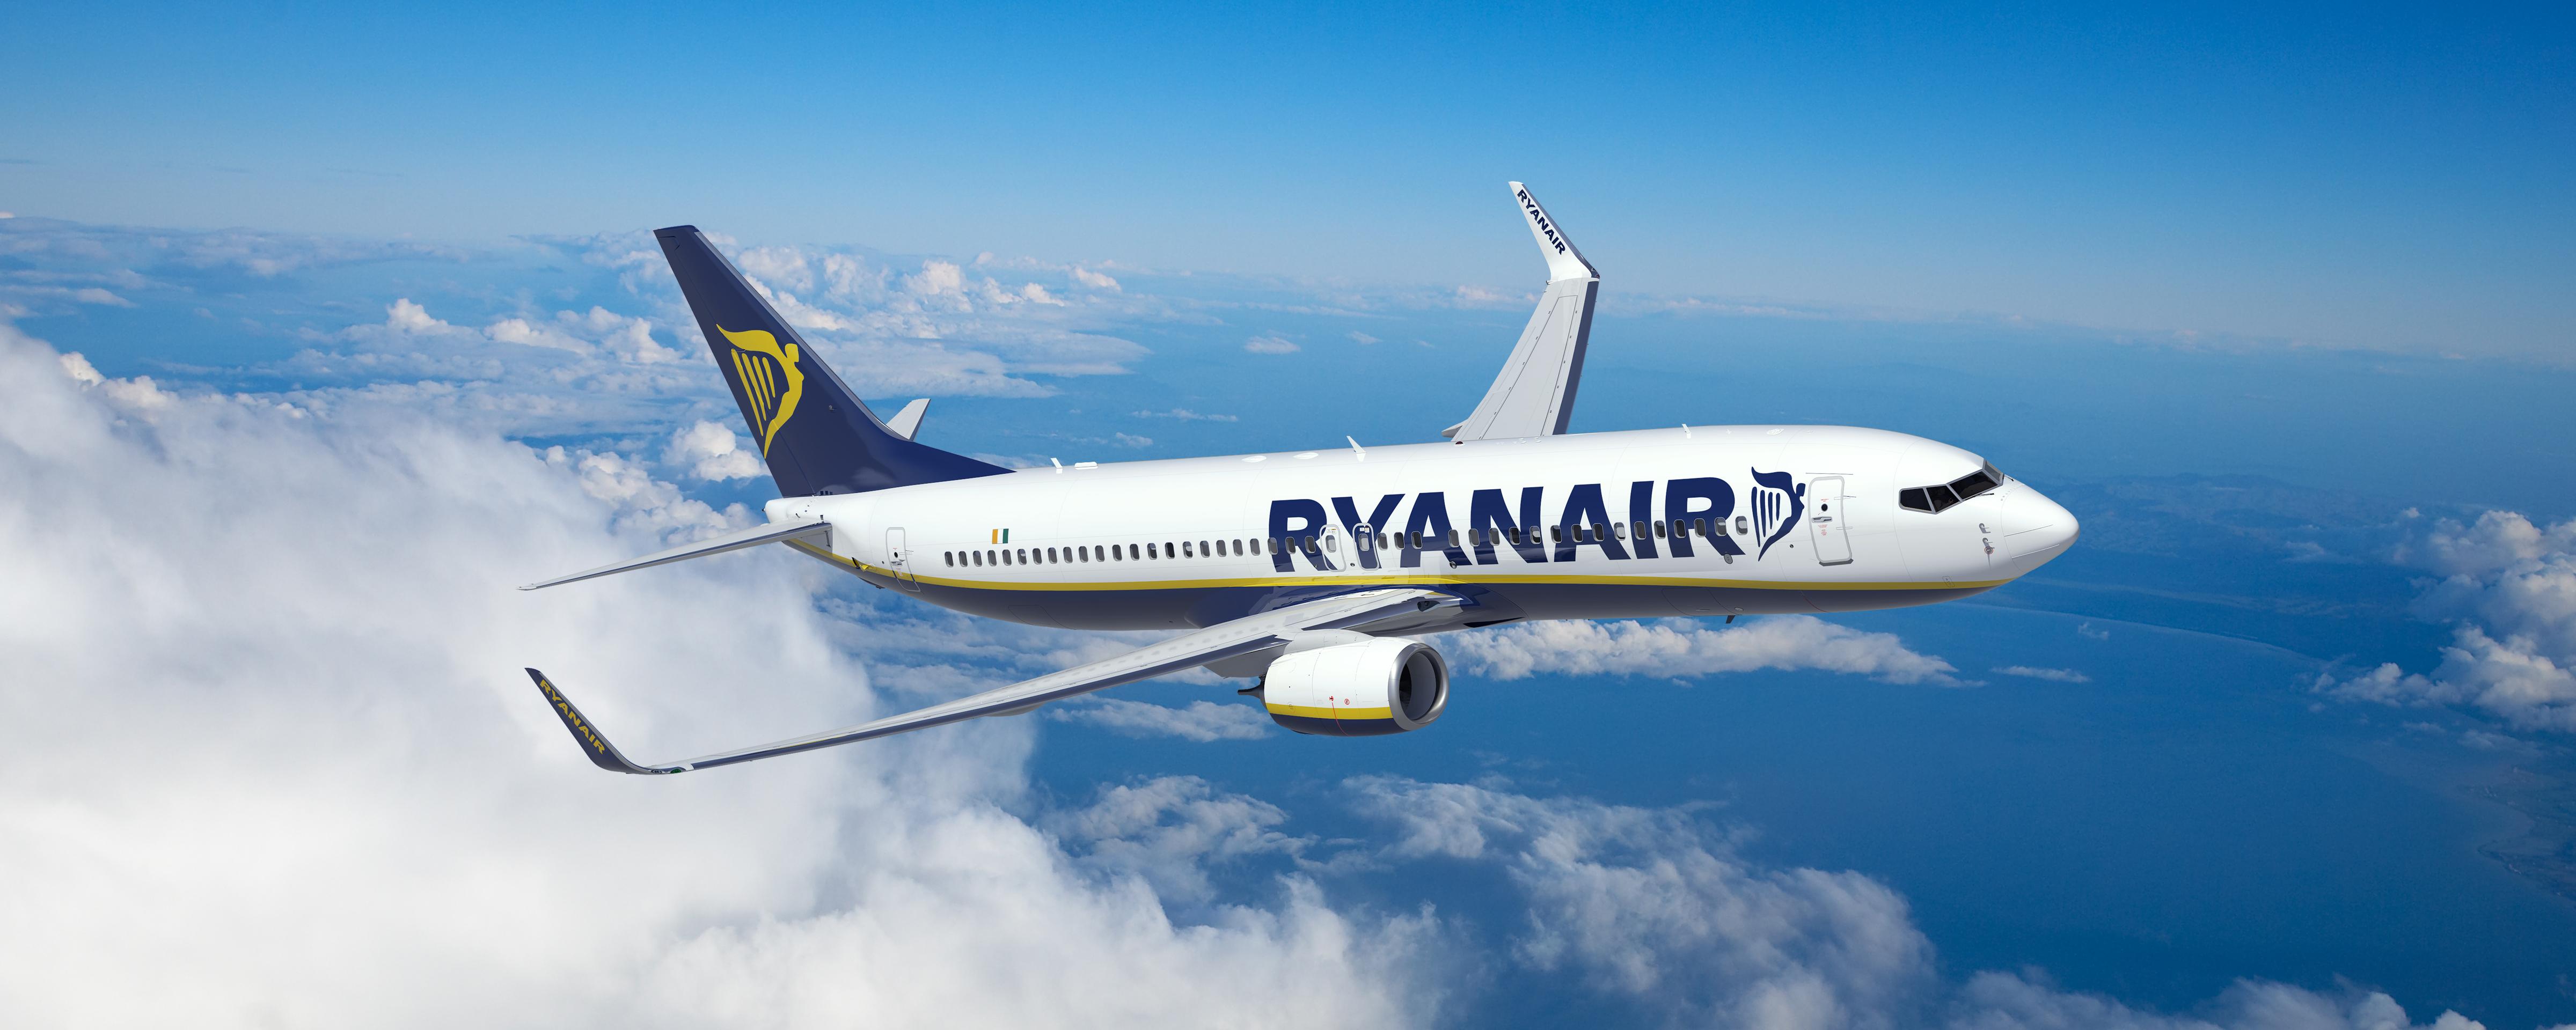 Η Επιβατικη Κινηση Τησ Ryanair Τον Σεπτεμβριο Αυξανεται Κατα 11% Σε 13.1εκ Πελατεσ